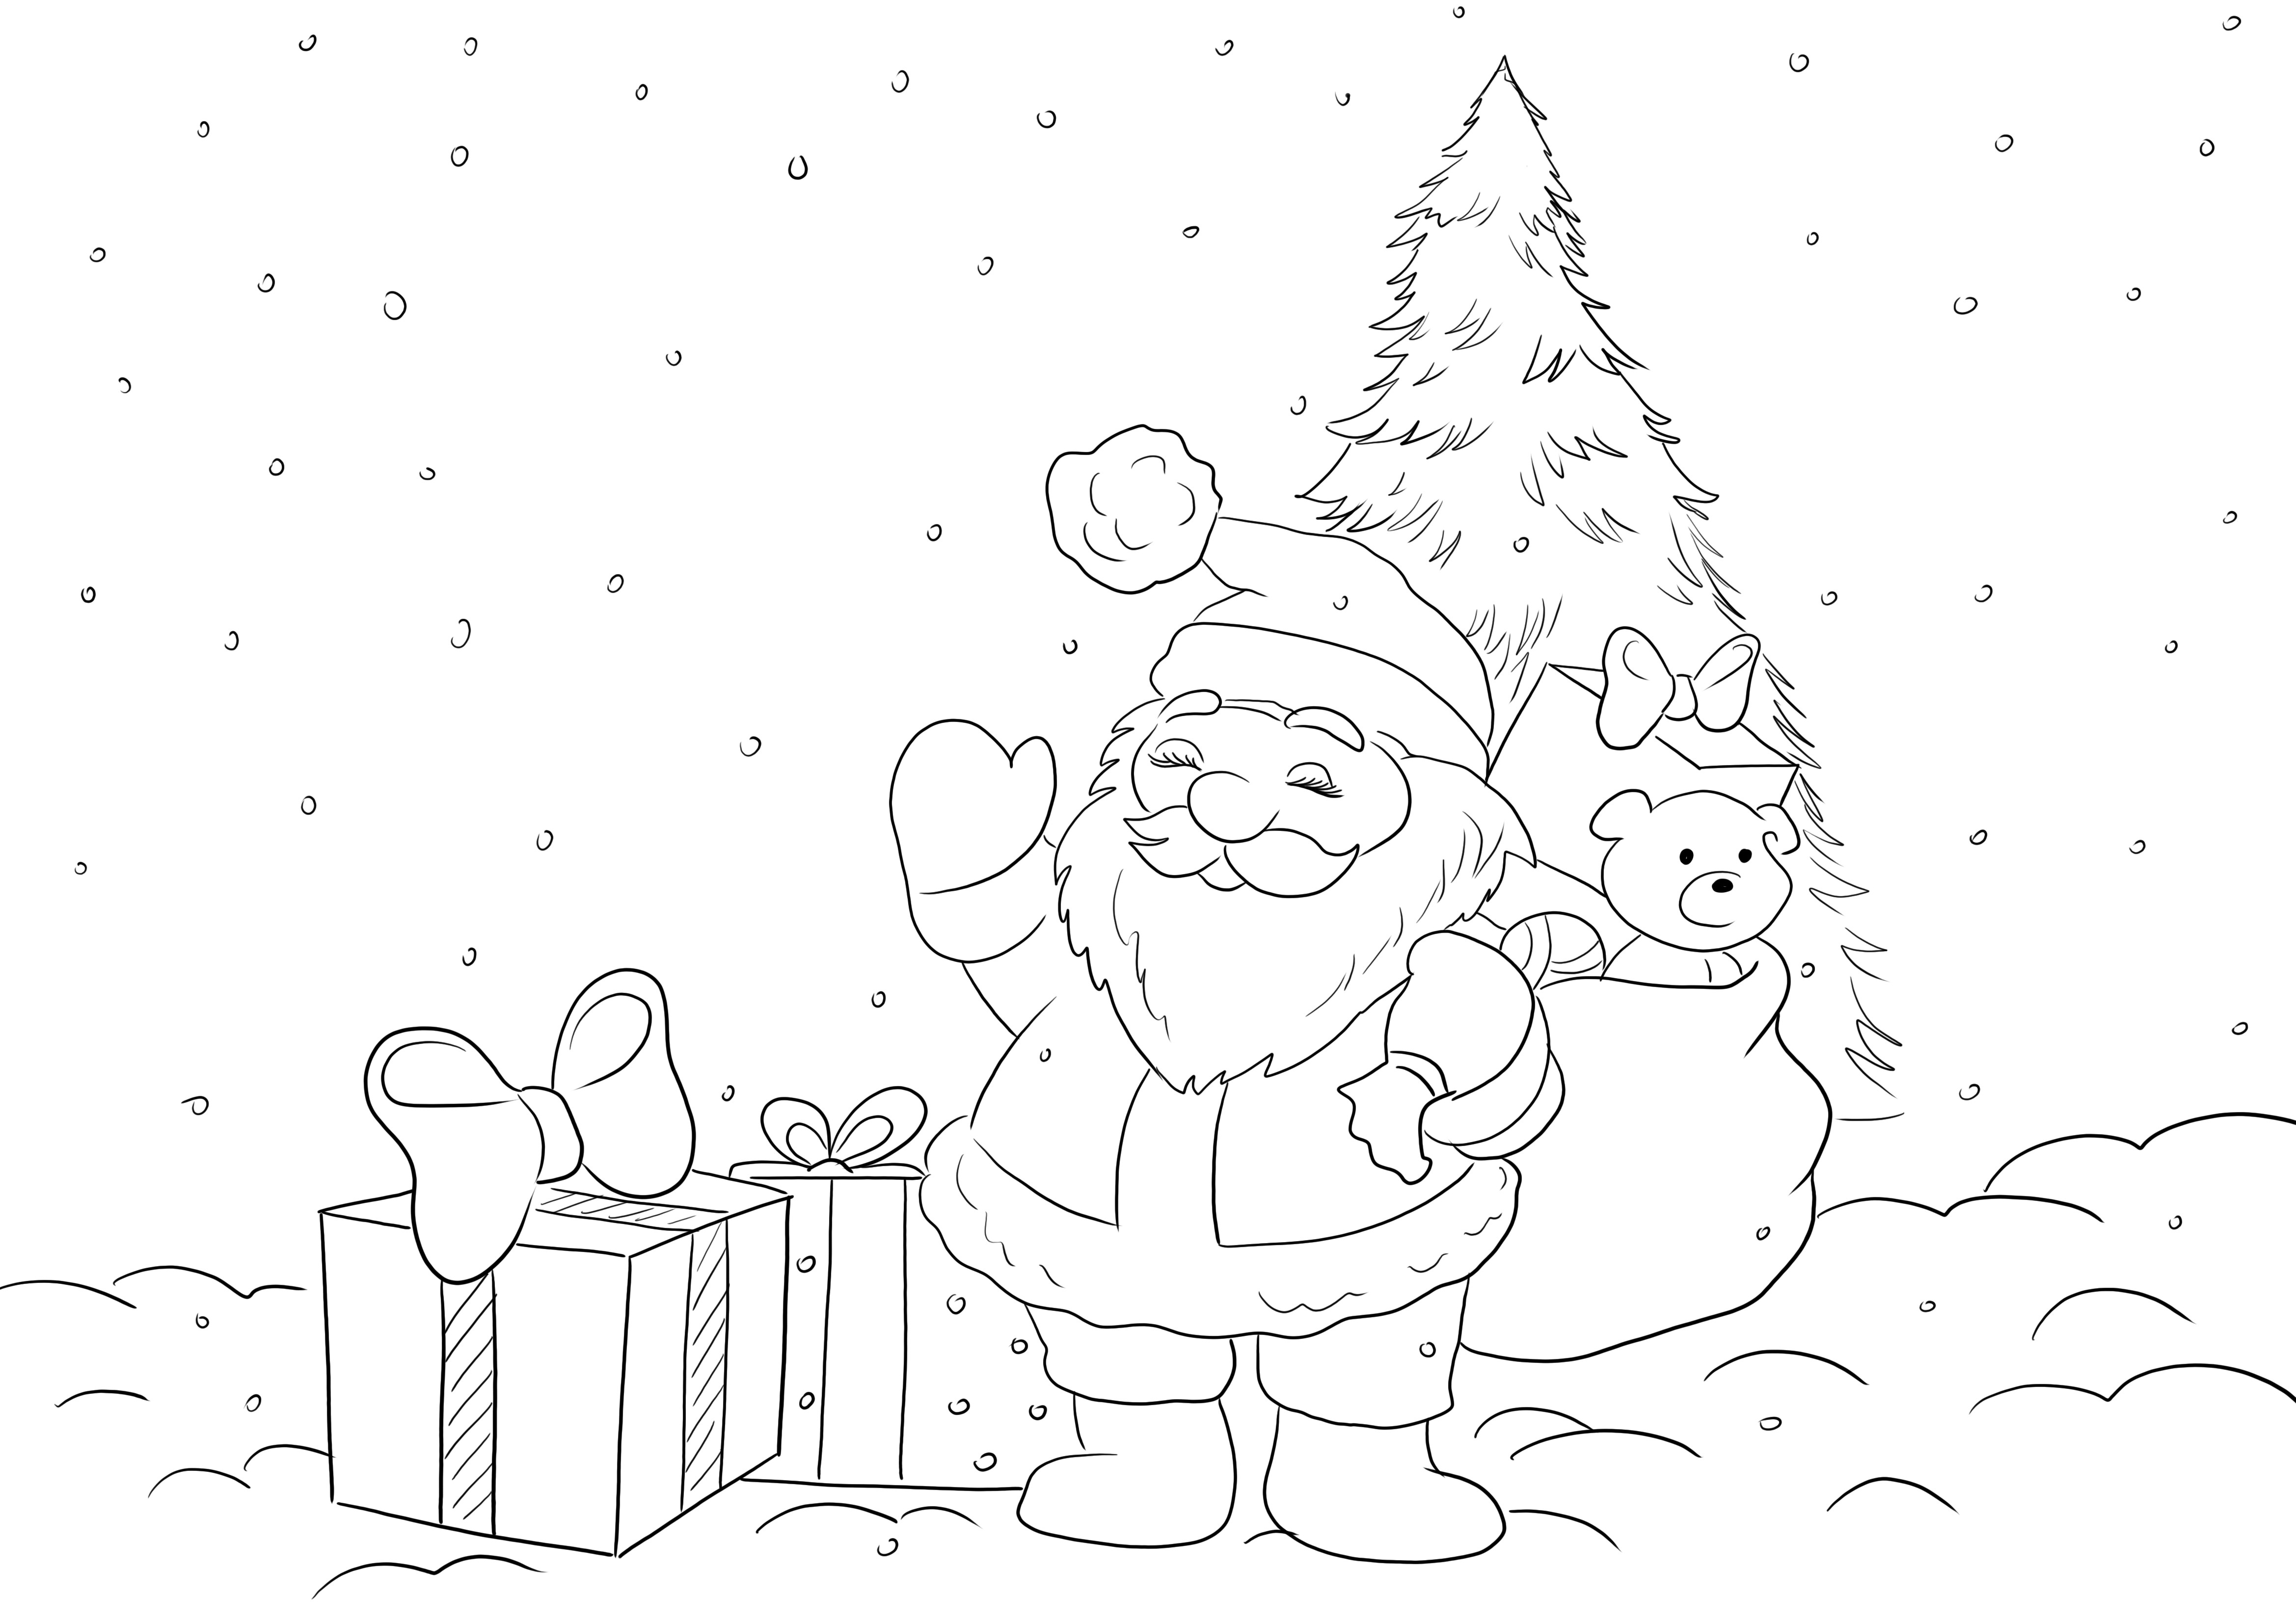 Kostenloses Bild zum Ausmalen von Santa mit Geschenken, die darauf warten, dass alle Kinder mit Spaß ausmalen